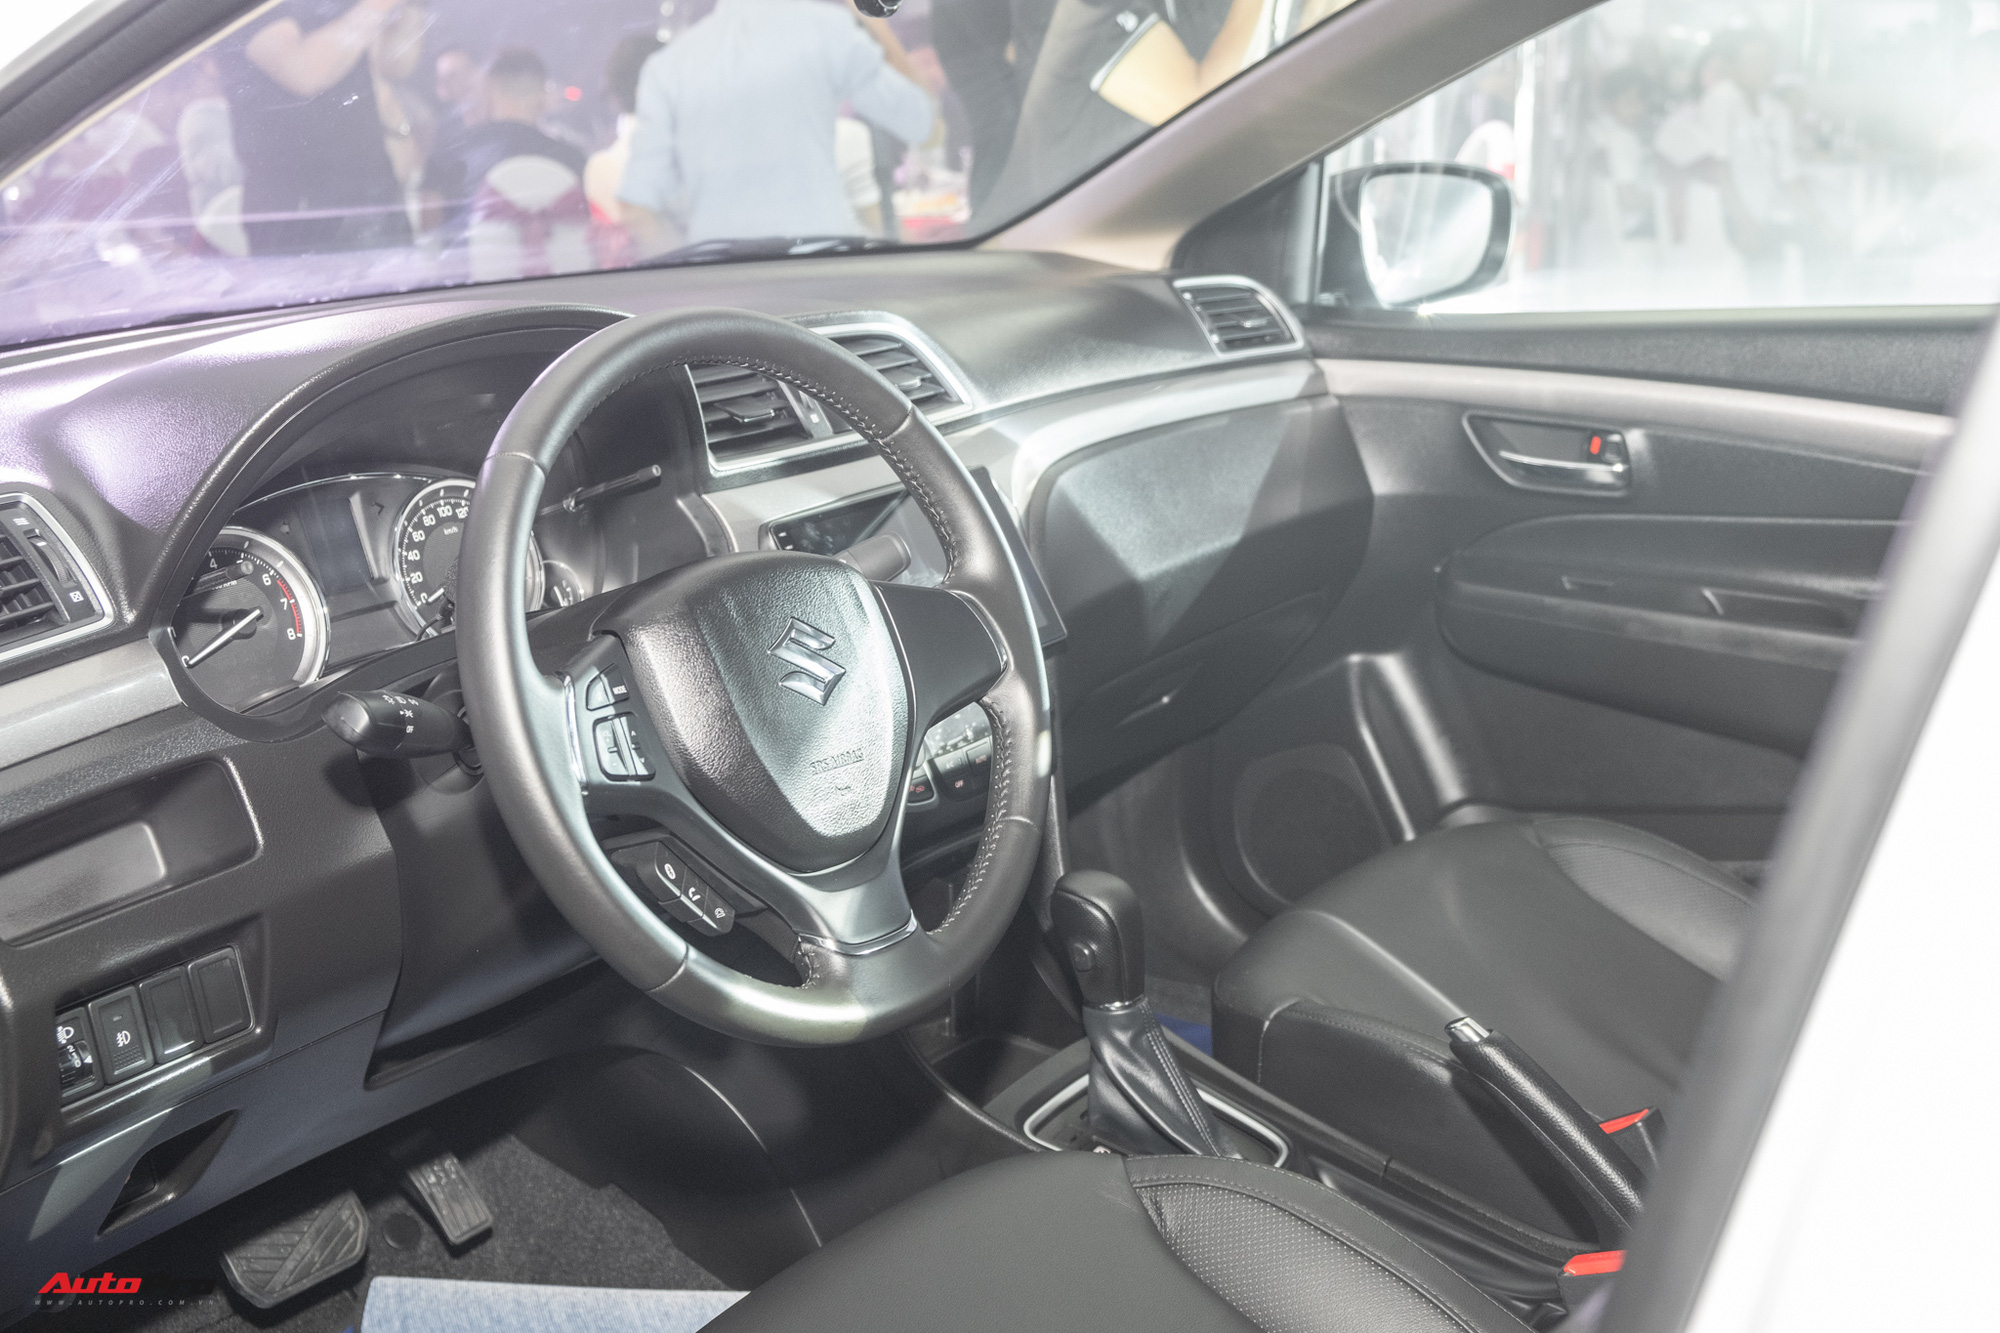 Ra mắt Suzuki Ciaz 2020: Giá 529 triệu đồng, thêm nhiều công nghệ đấu Toyota Vios - Ảnh 2.